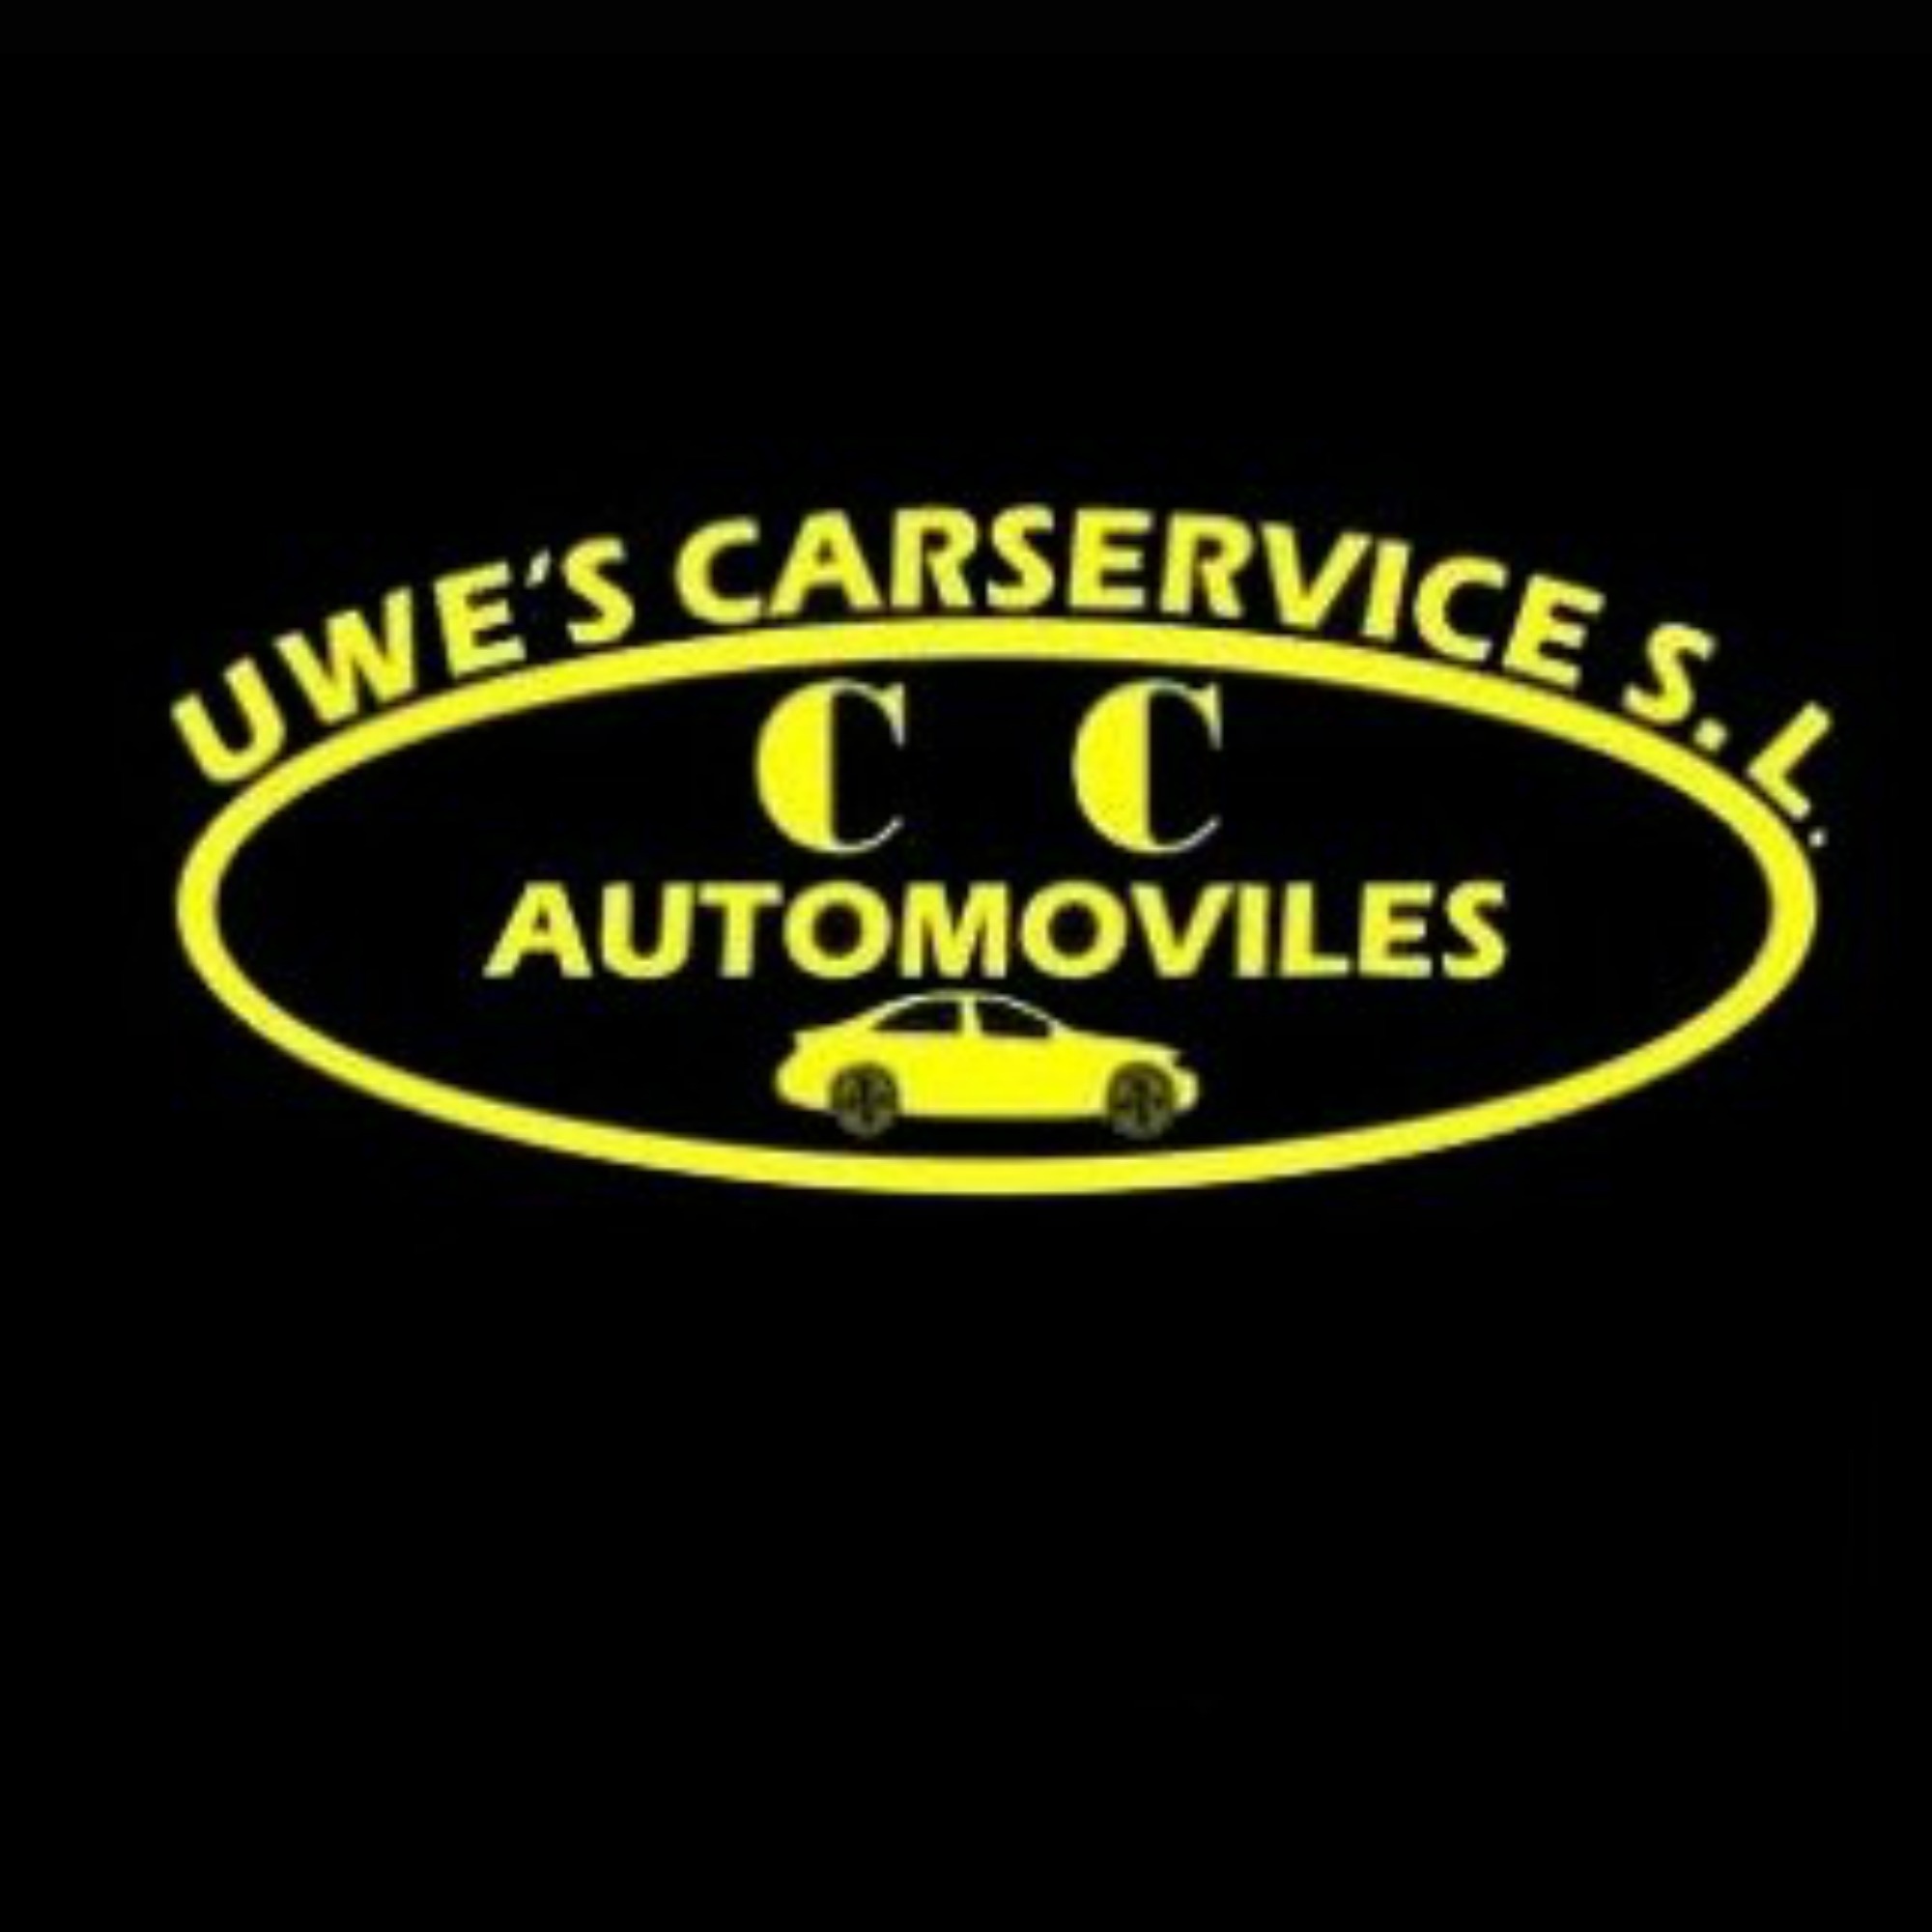 Uwe's Carservice